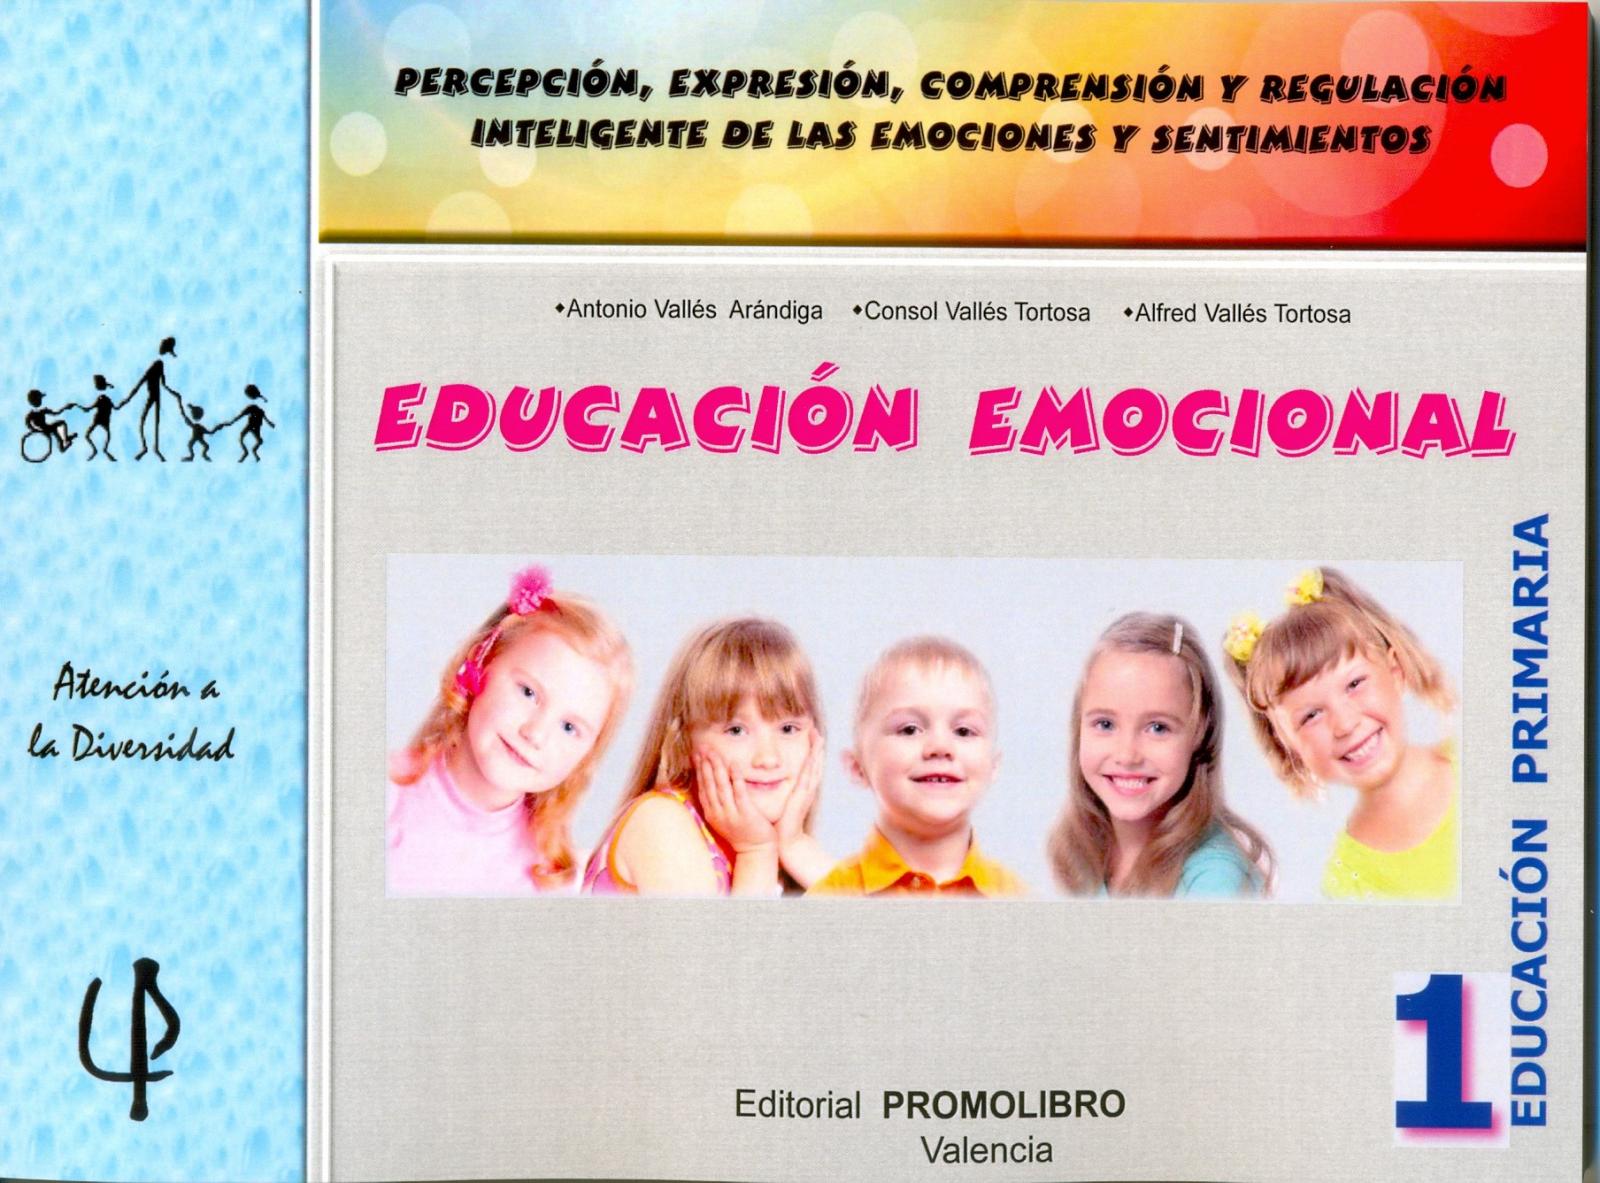 218.- EDUCACIÓN EMOCIONAL 1. Percepción, expresión, comprensión y regulación inteligente de las emociones y sentimientos. 1º Educación Primaria